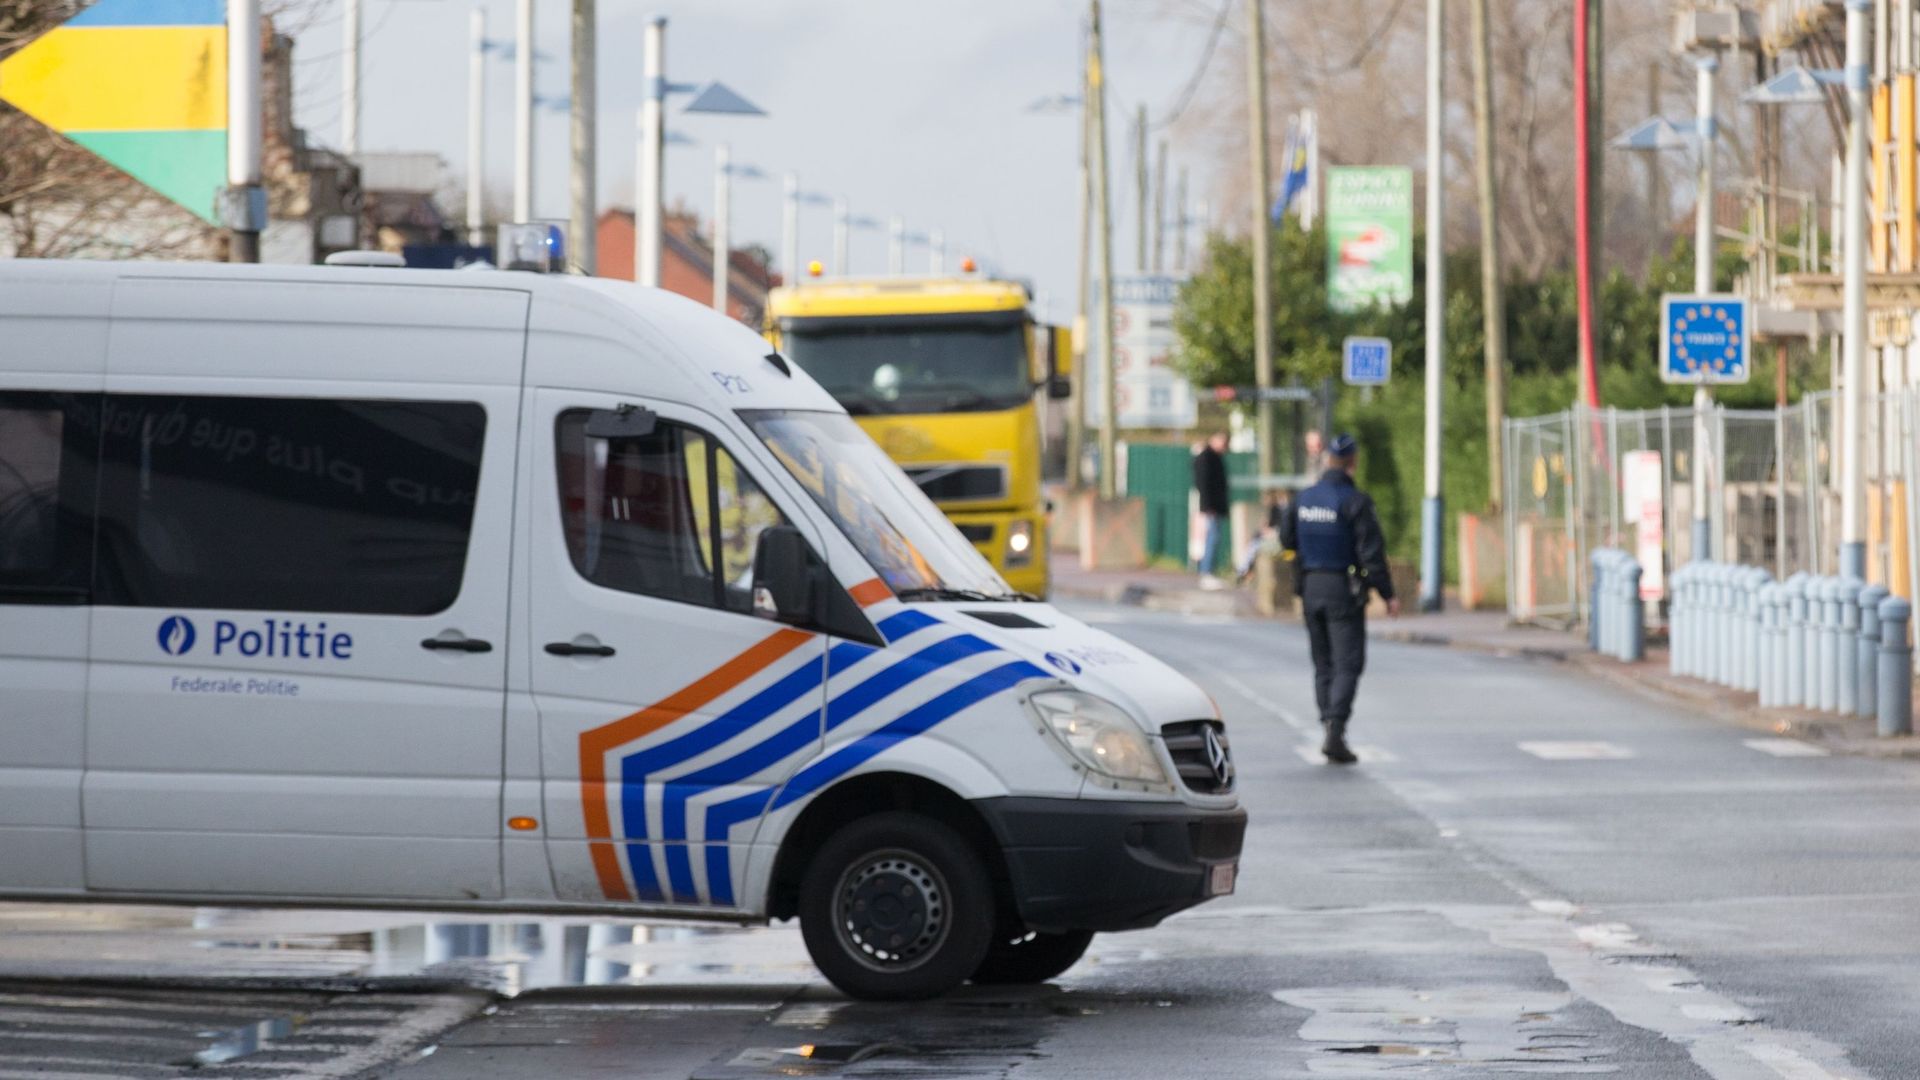 Des policiers bruxellois surveilleront la frontière, pas de conséquences sur plan canal